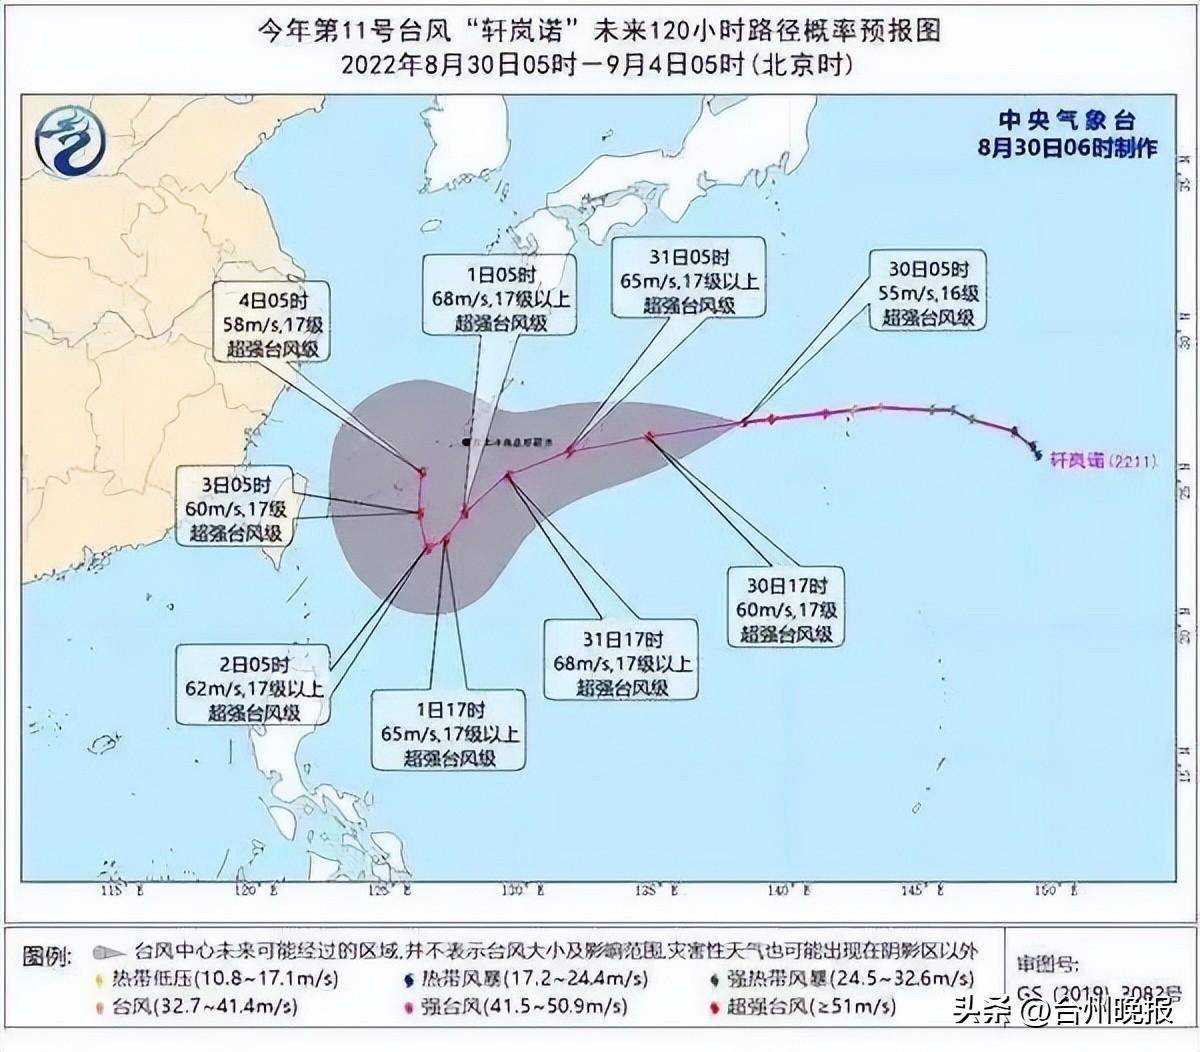 今年首个超强台风诞生 台州人明起出门千万注意这件事 中央气象台 公里 小时 天气